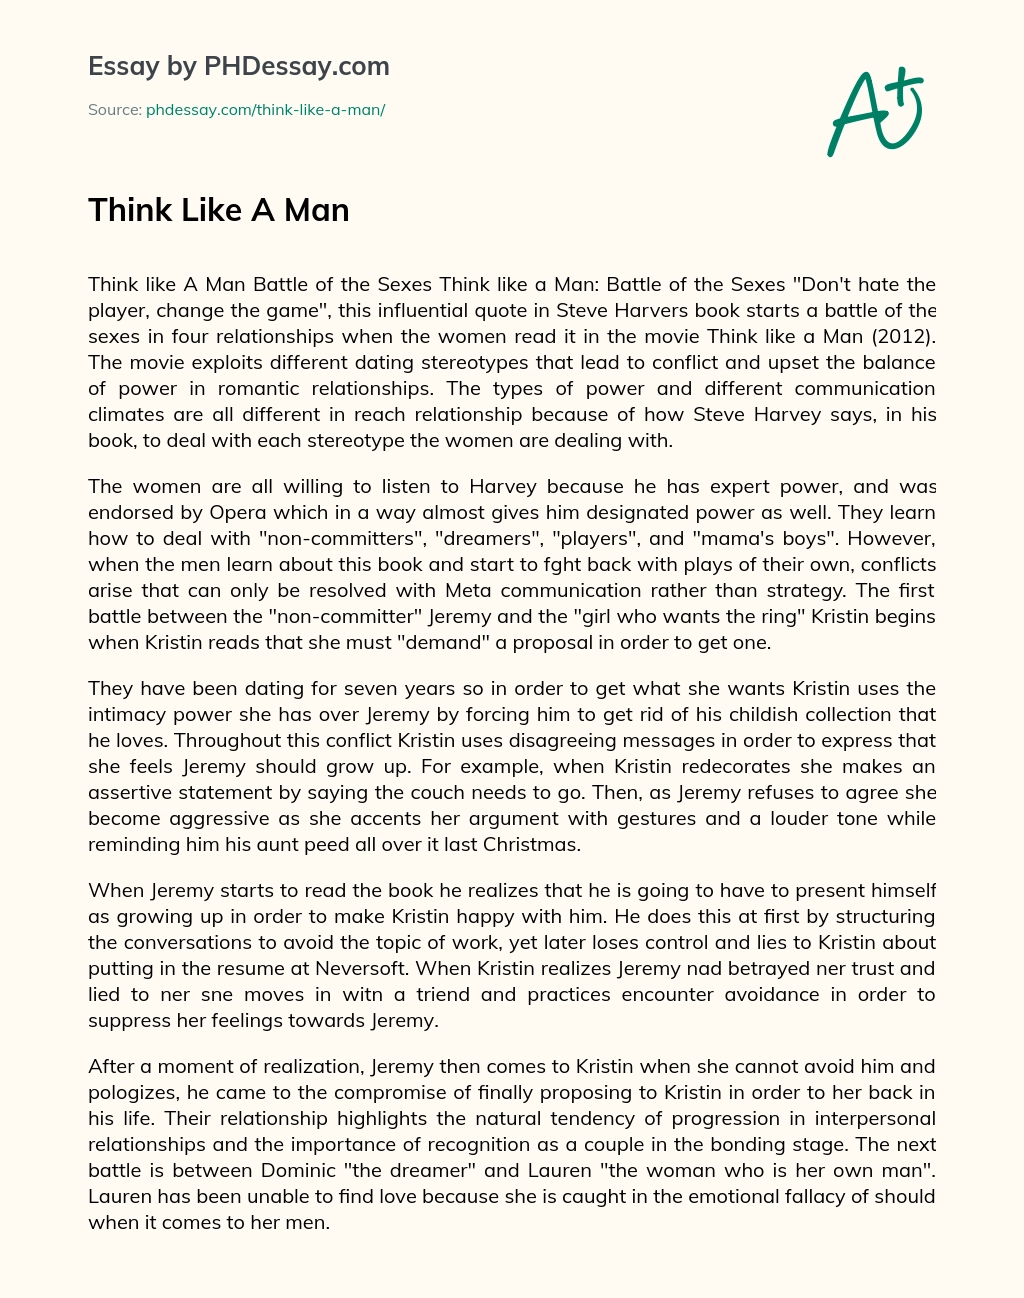 Think Like A Man essay